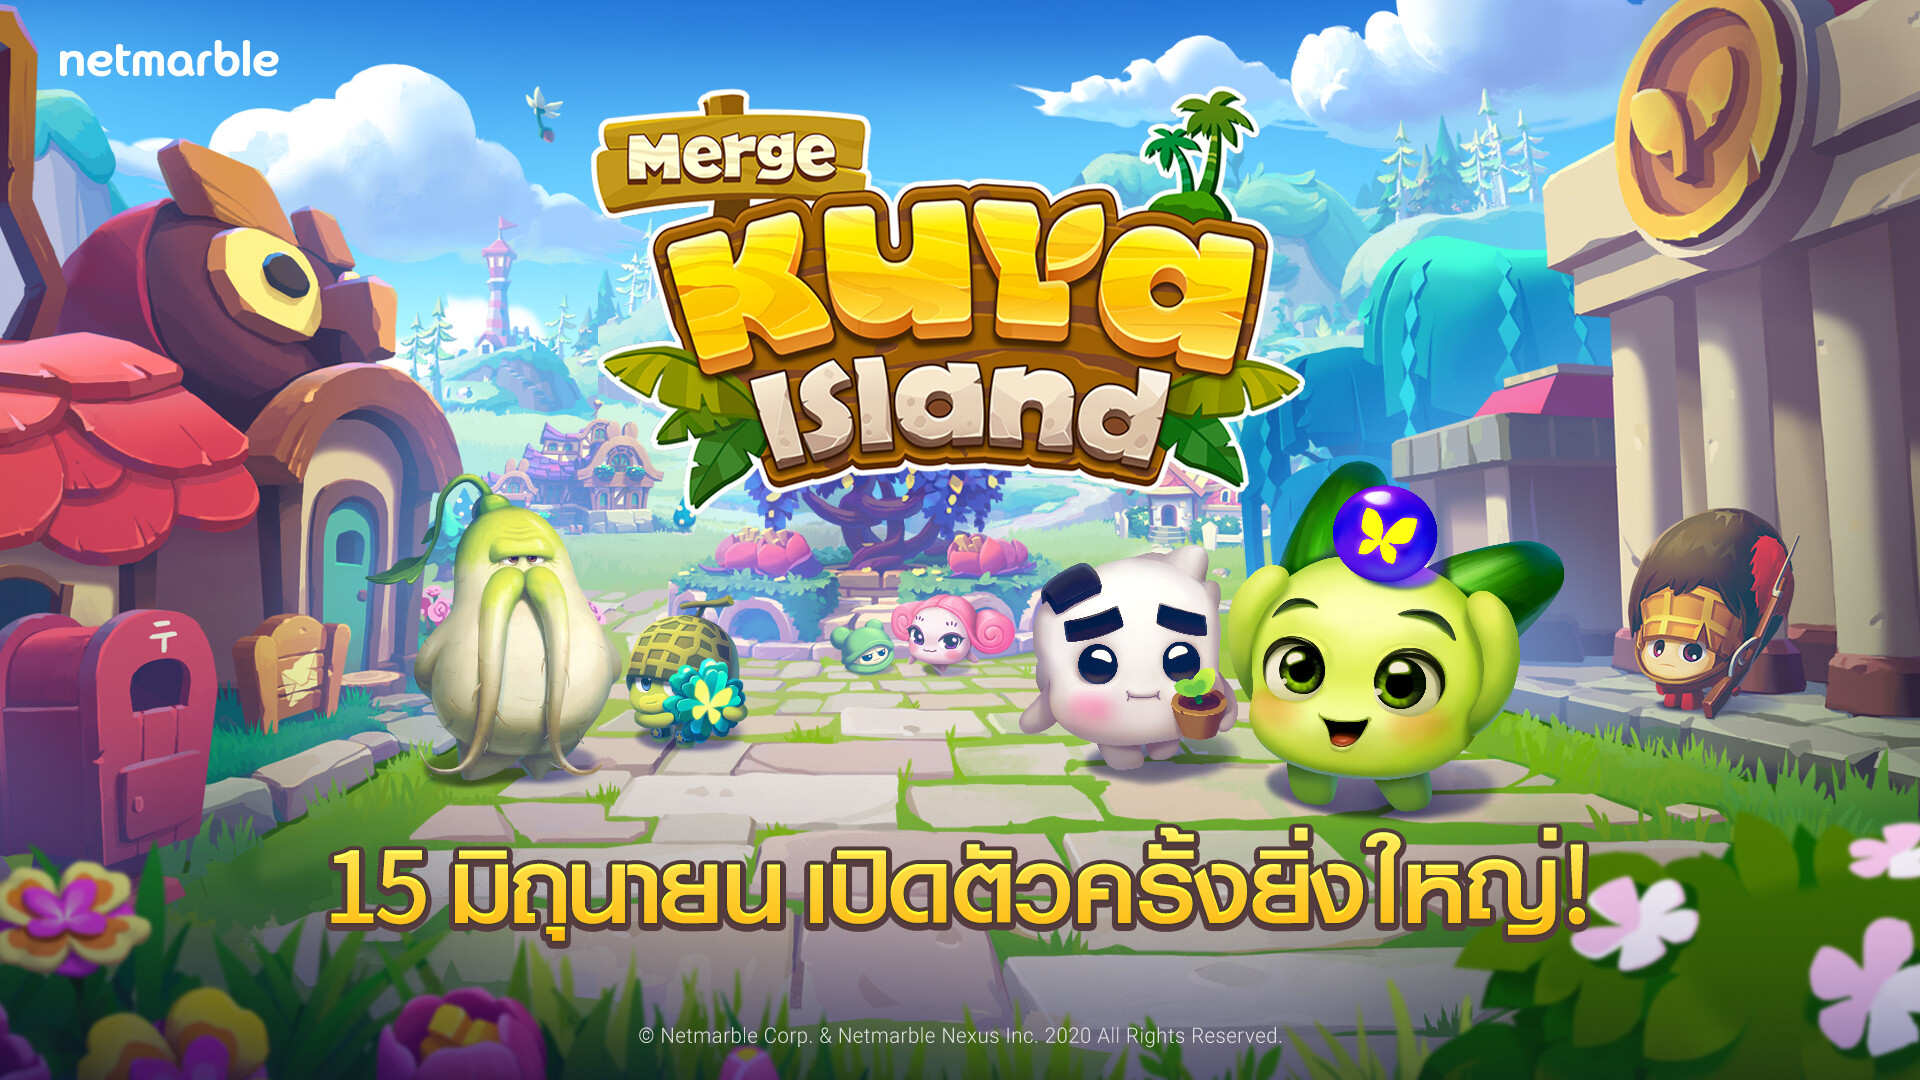 เปิดแล้ว!! "Merge Kuya Island"  เกมมือถือแนว Casual สุดคิวท์จากเน็ตมาร์เบิ้ล